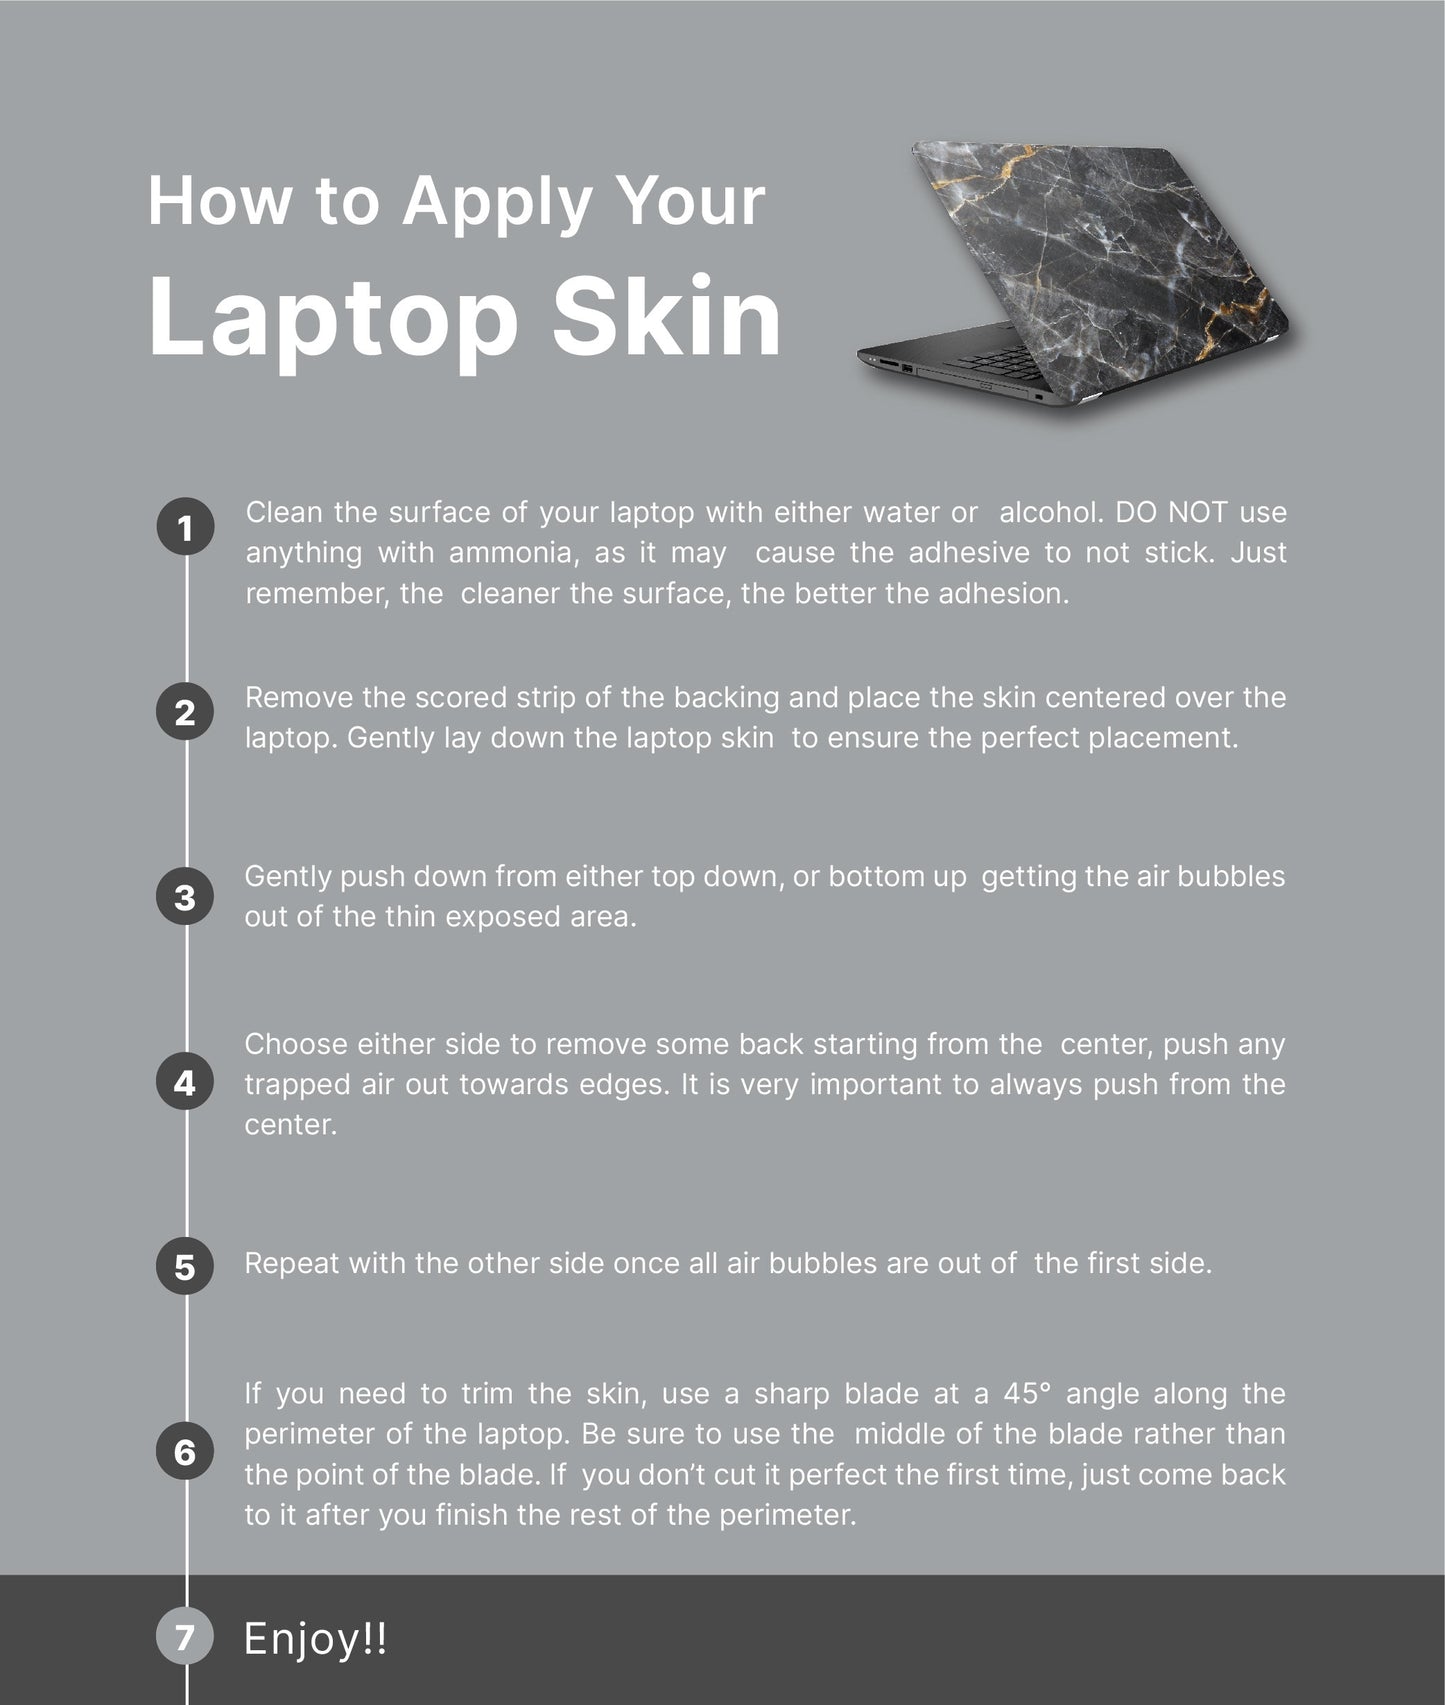 Mountains View Laptop Skin, Laptop Cover, Laptop Skins, Removable Laptop Skins, Laptop Decal, Customized Laptop Skin, Laptop Stickers 356